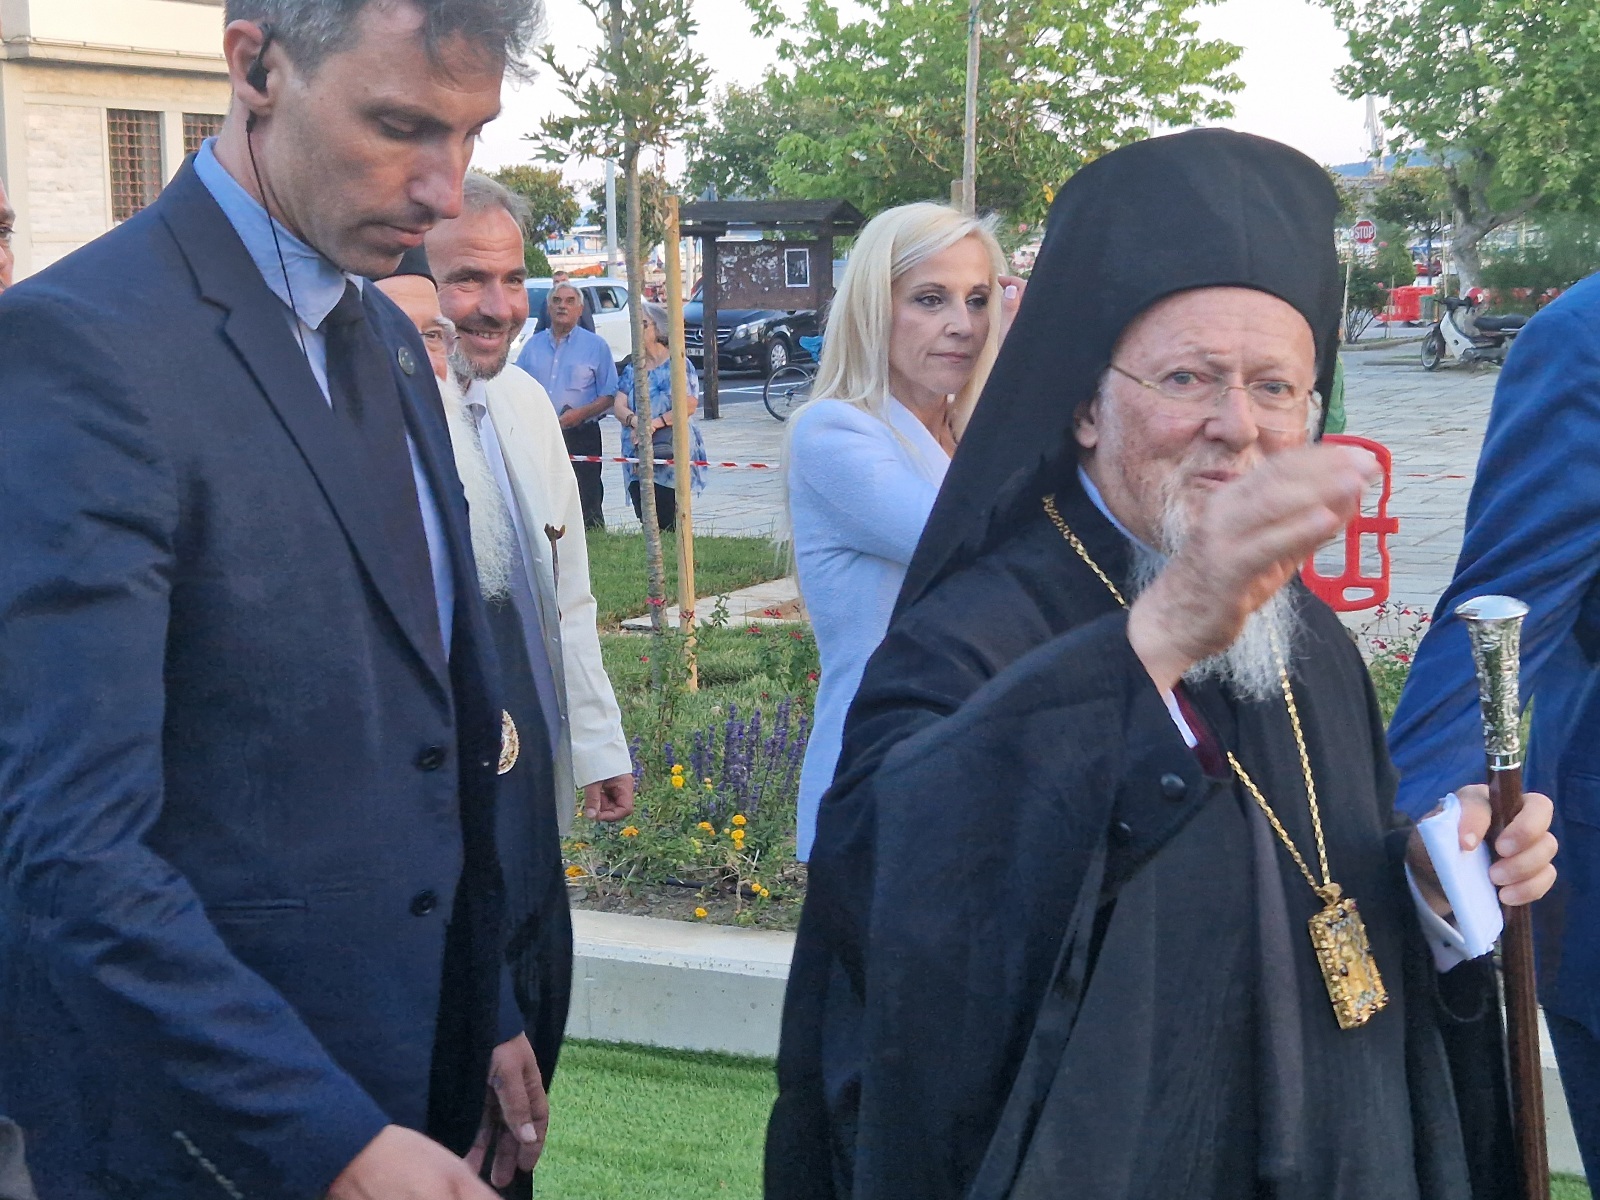 Βόλος: Ο Οικουμενικός Πατριάρχης Βαρθολομαίος κήρυξε την έναρξη της Ναυτικής Εβδομάδας και εγκαινίασε το Δημοτικό Θέατρο